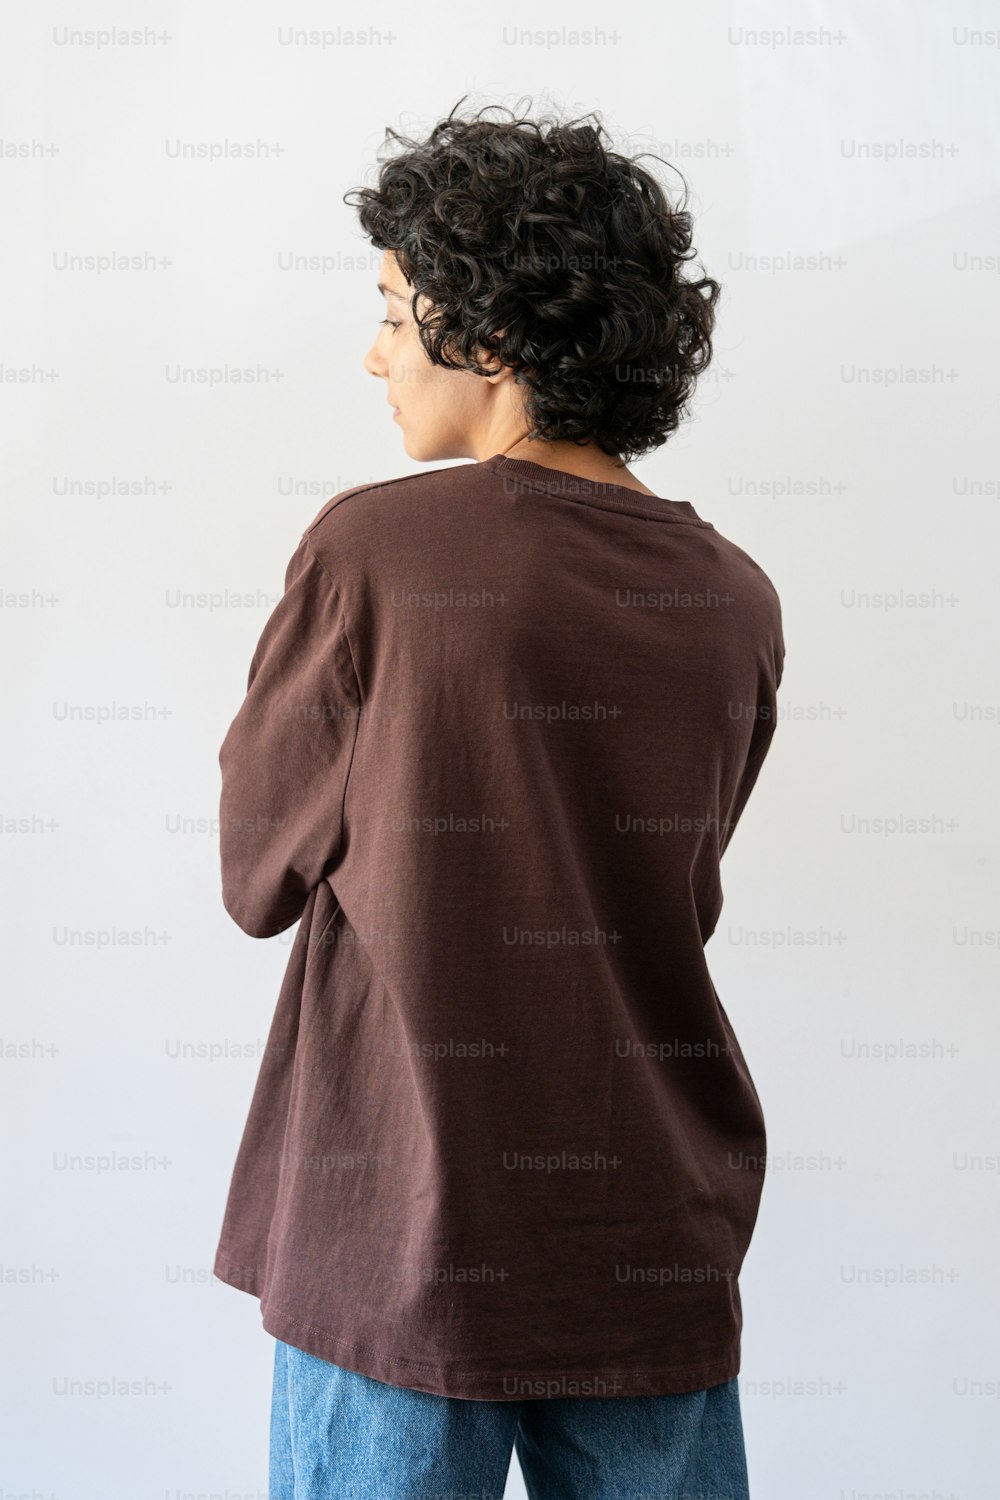 Une femme debout devant un mur blanc